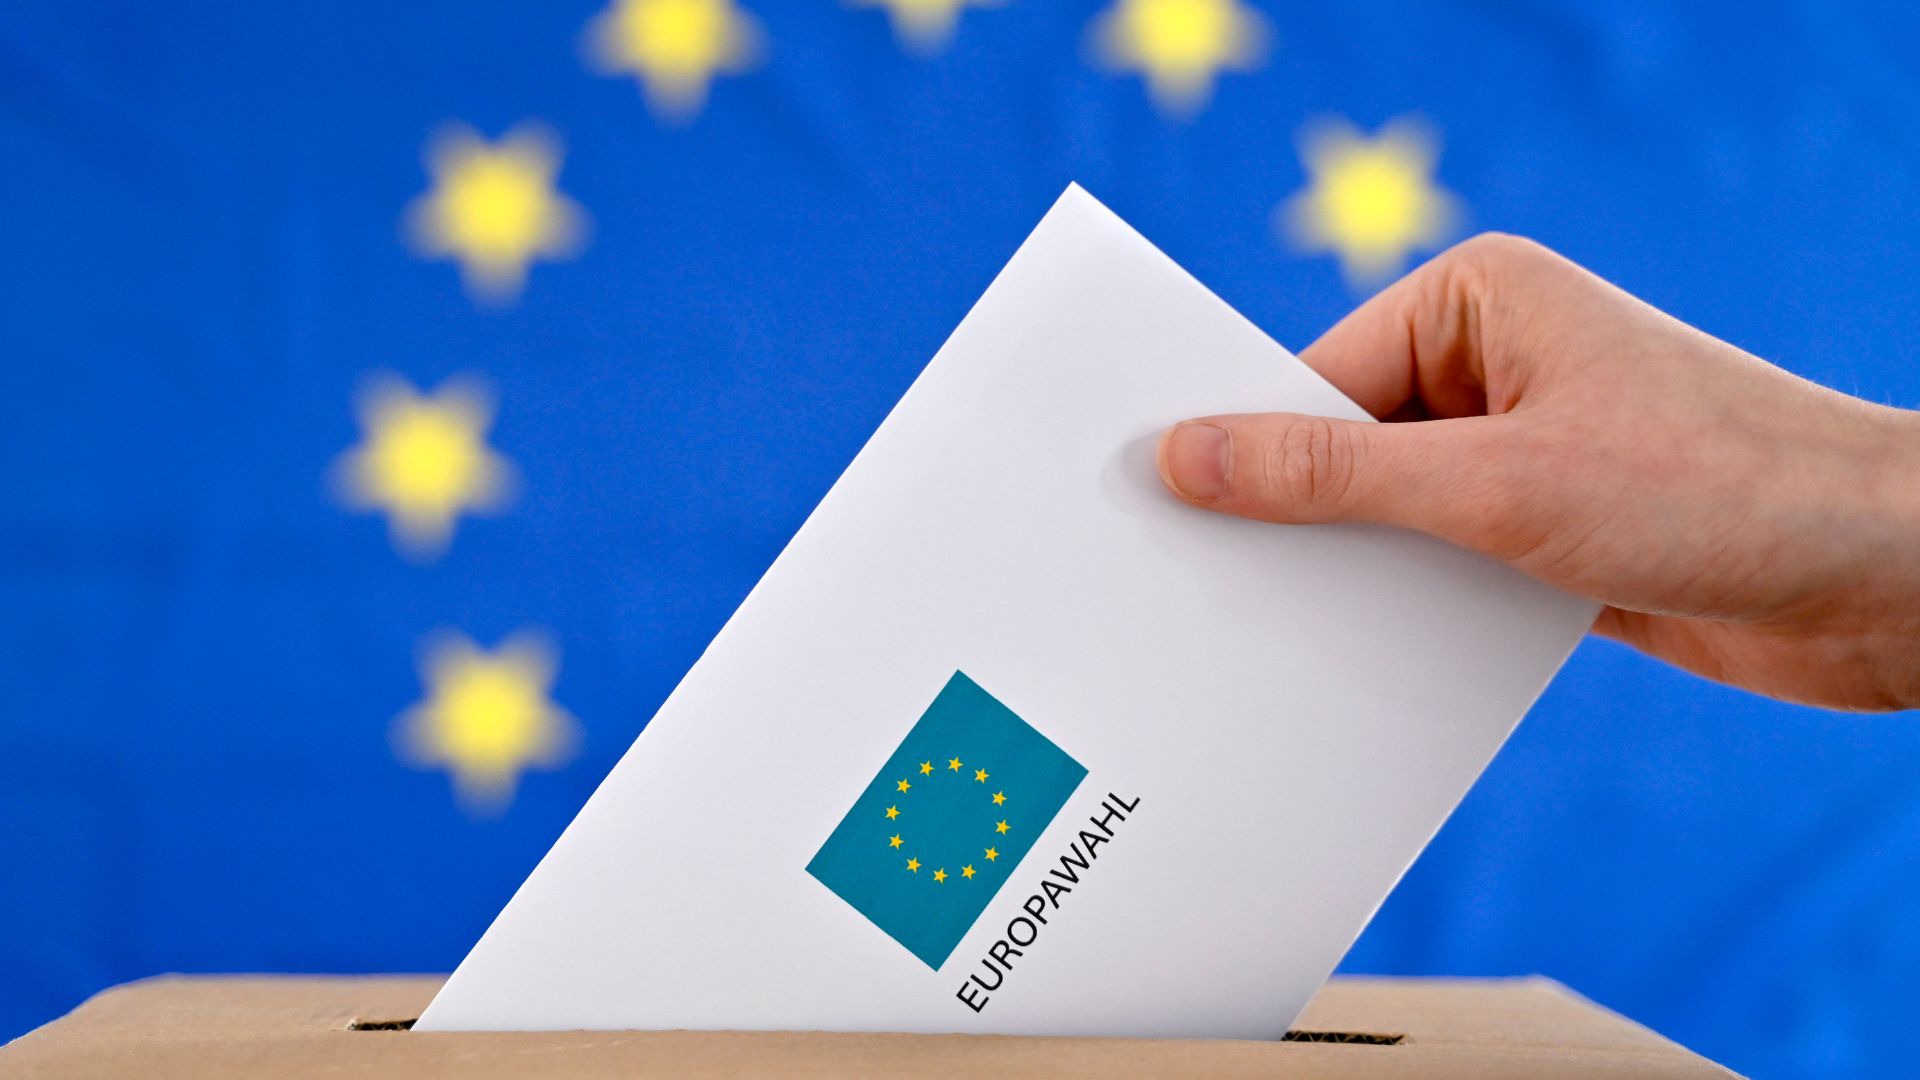 Eine Hand steckt einen Wahlbrief in eine Wahlurne. Auf dem Brief steht "Europawahl", im Hintergrund ist eine Europaflagge mit gelben Sternen auf blauem Hintergrund zu sehen.